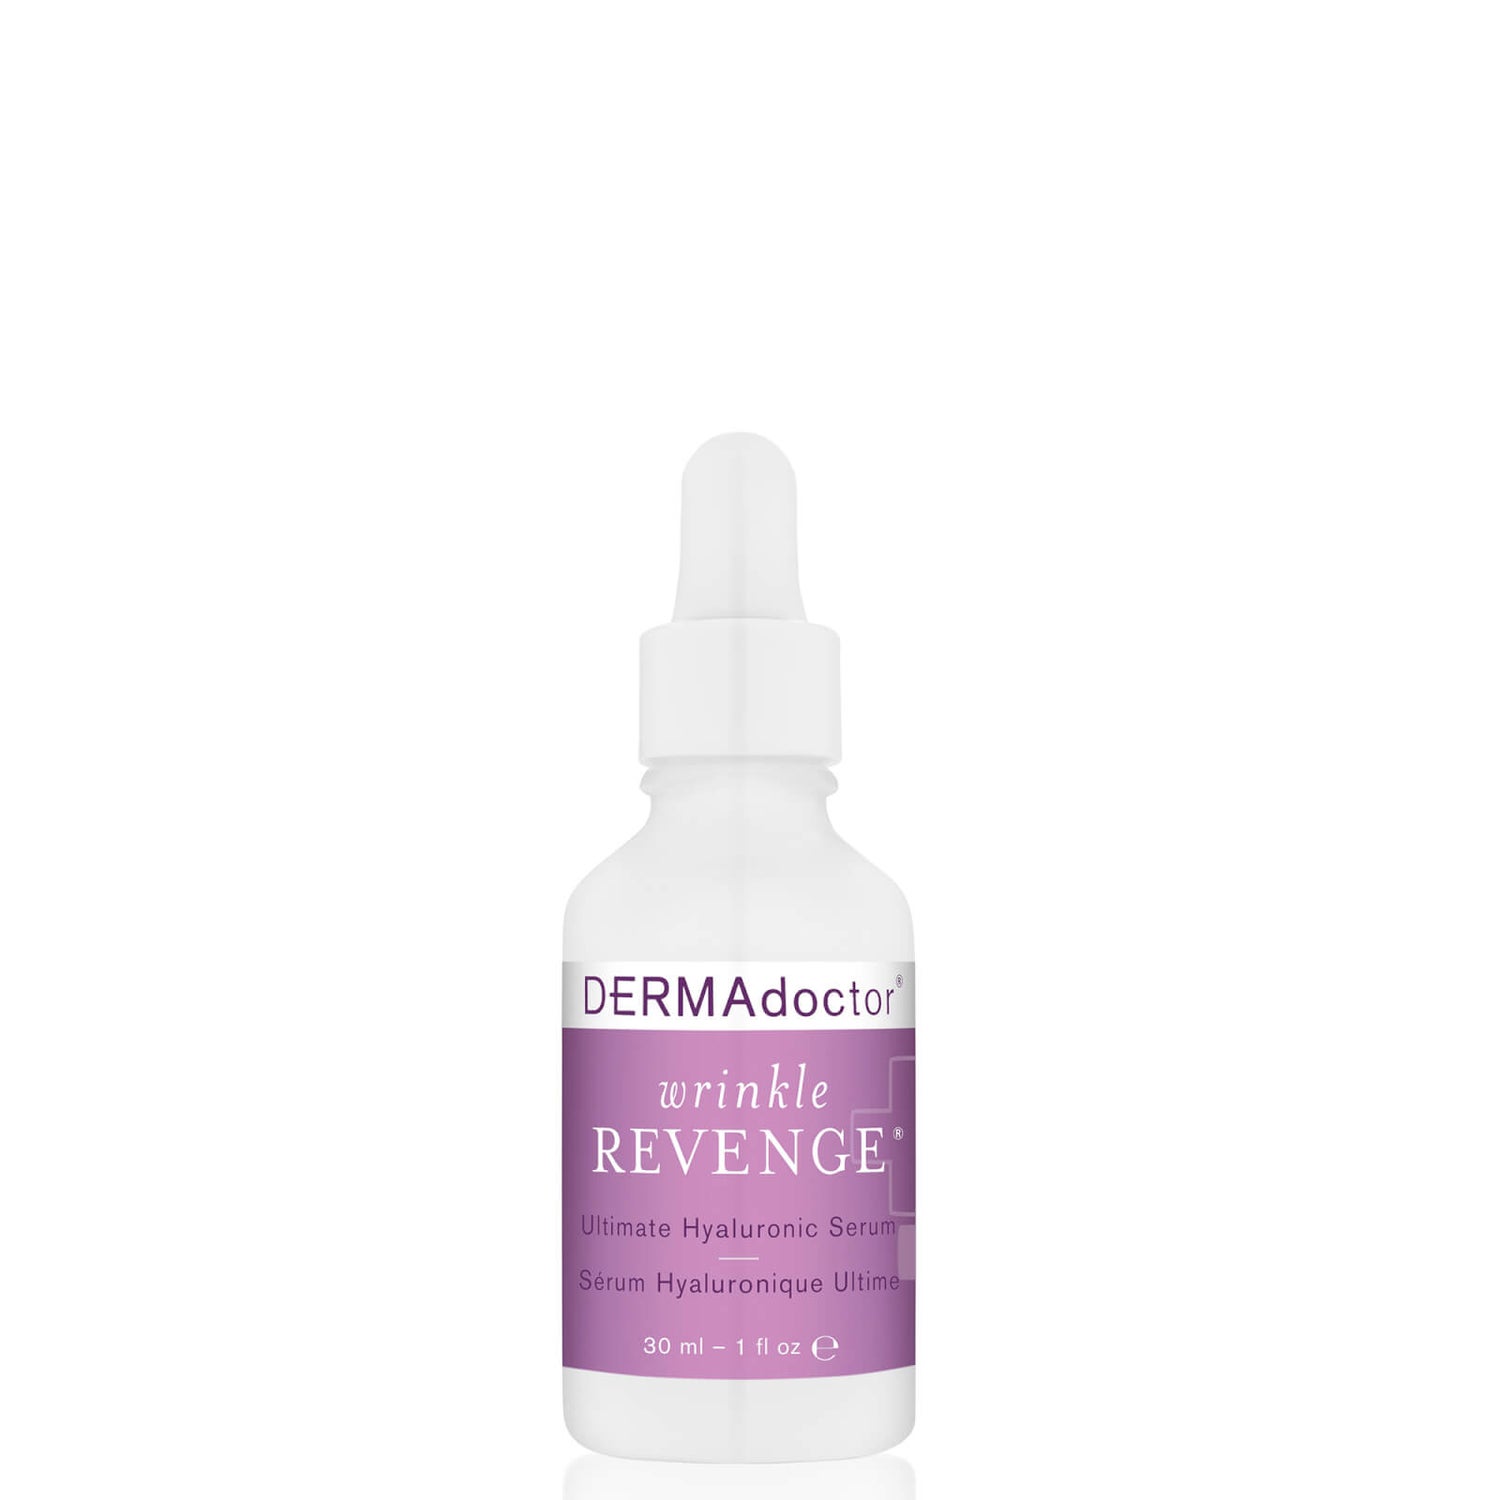 DERMAdoctor Wrinkle Revenge Ultimate Hyaluronic Serum